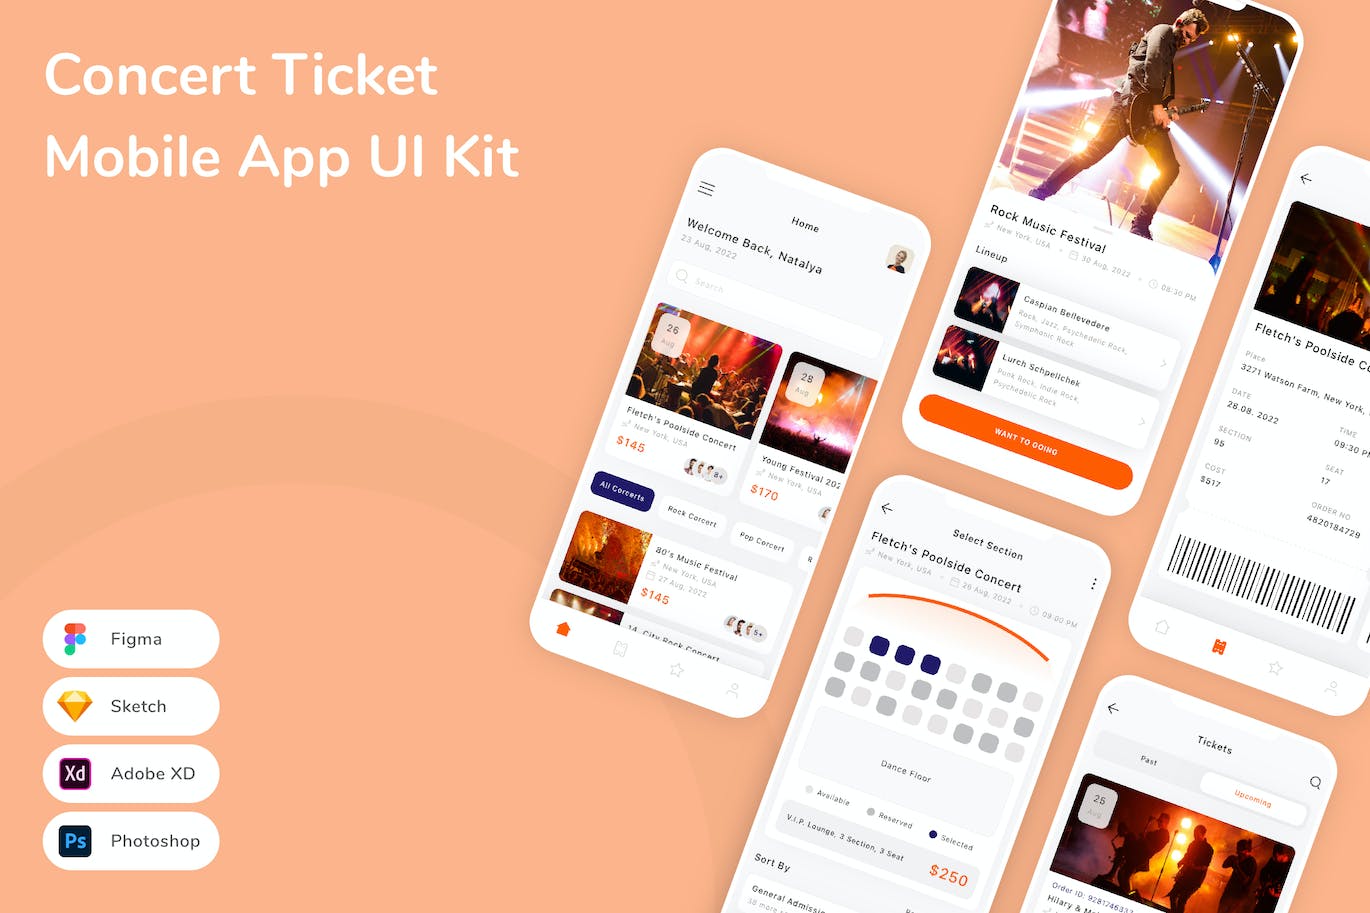 音乐会门票App应用程序UI设计模板套件 Concert Ticket Mobile App UI Kit APP UI 第1张